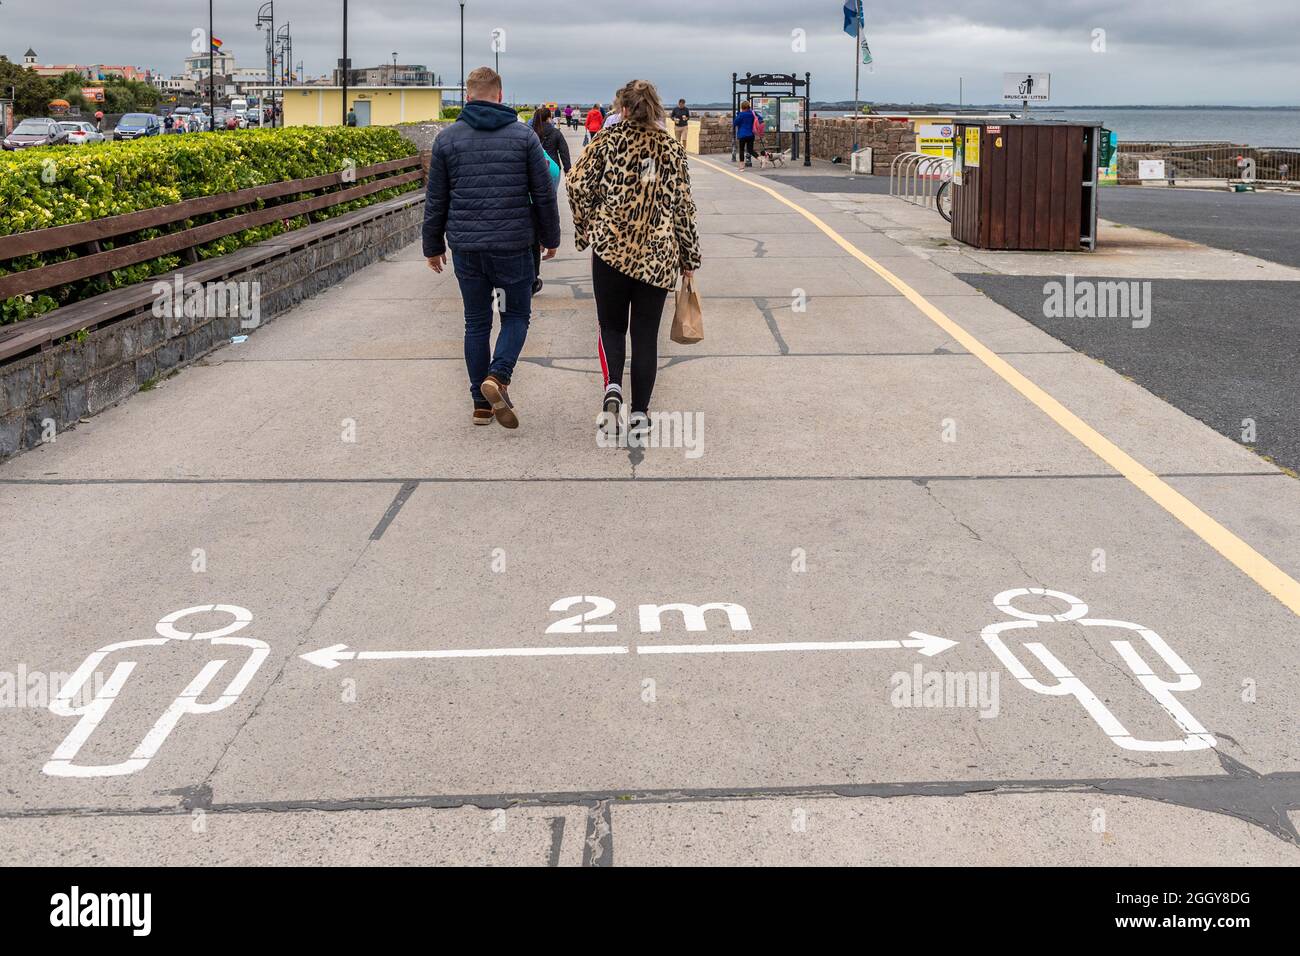 Les gens marchent après un panneau COVID-19 2m sur la promenade à Salthill, comté de Galway, Irlande. Banque D'Images